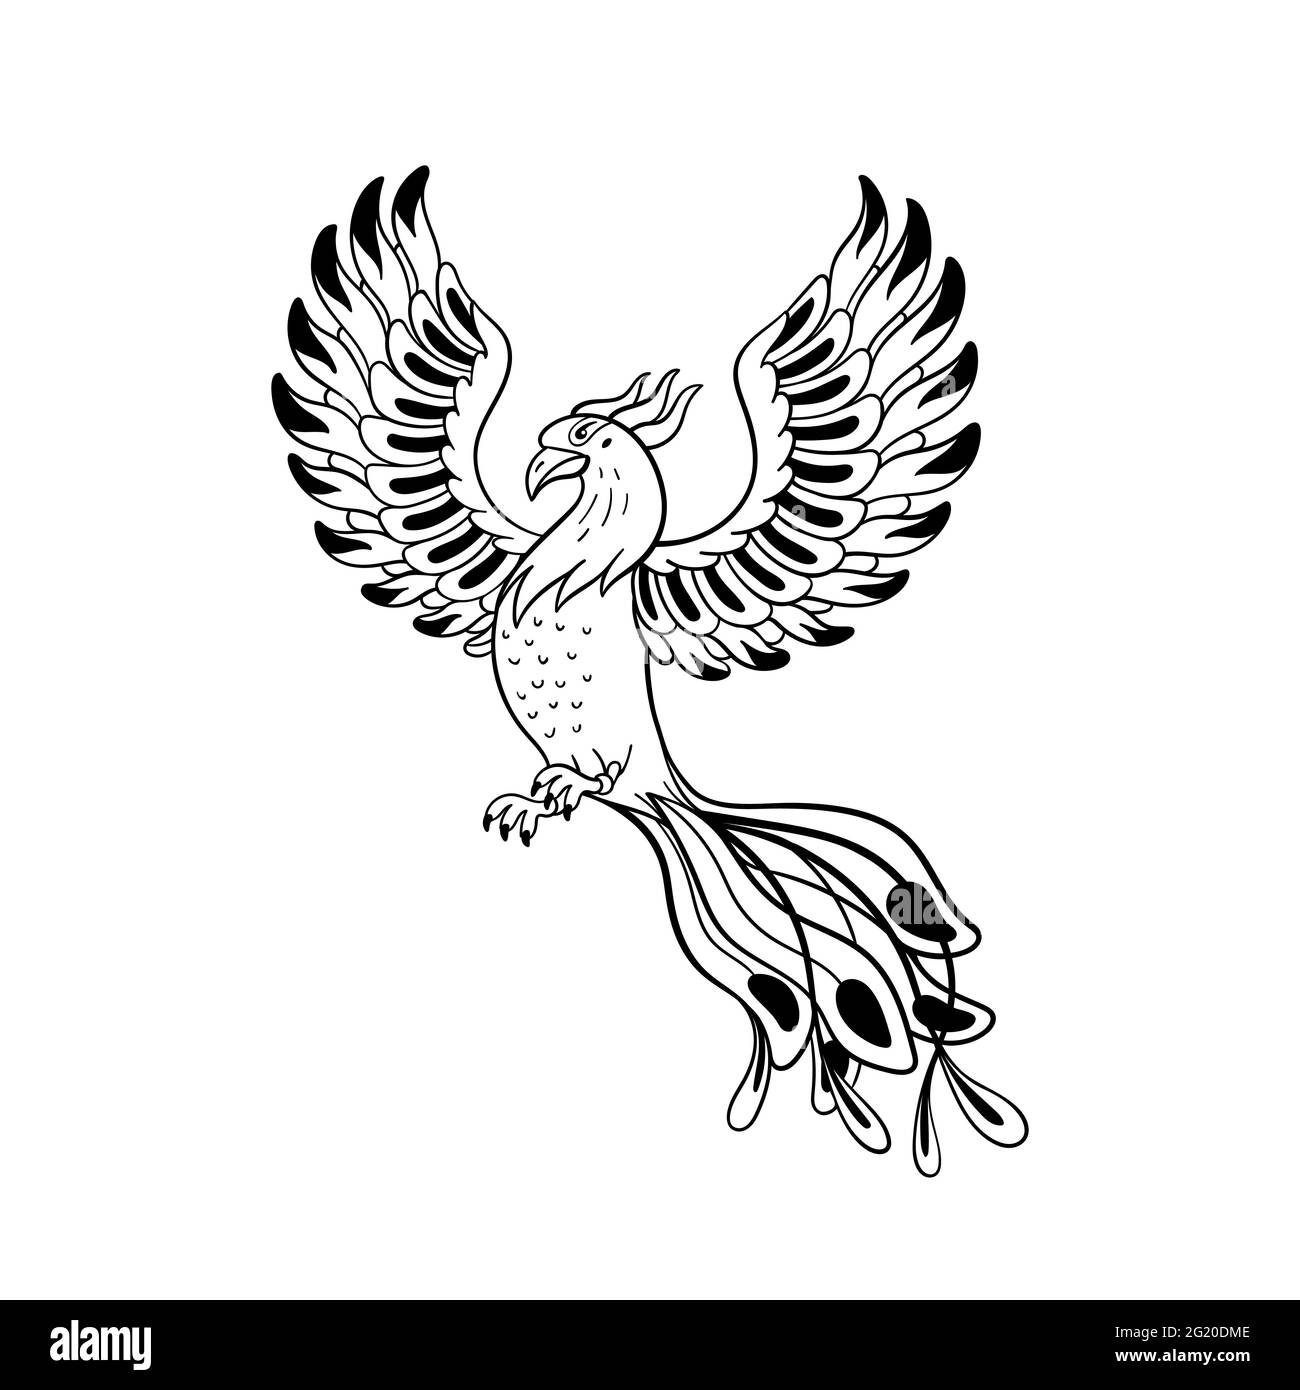 Ensemble de créatures magiques. Oiseau mythologique - phoenix. Illustration vectorielle noire et blanche de style Doodle isolée sur fond blanc. Motif tatouage ou co Illustration de Vecteur